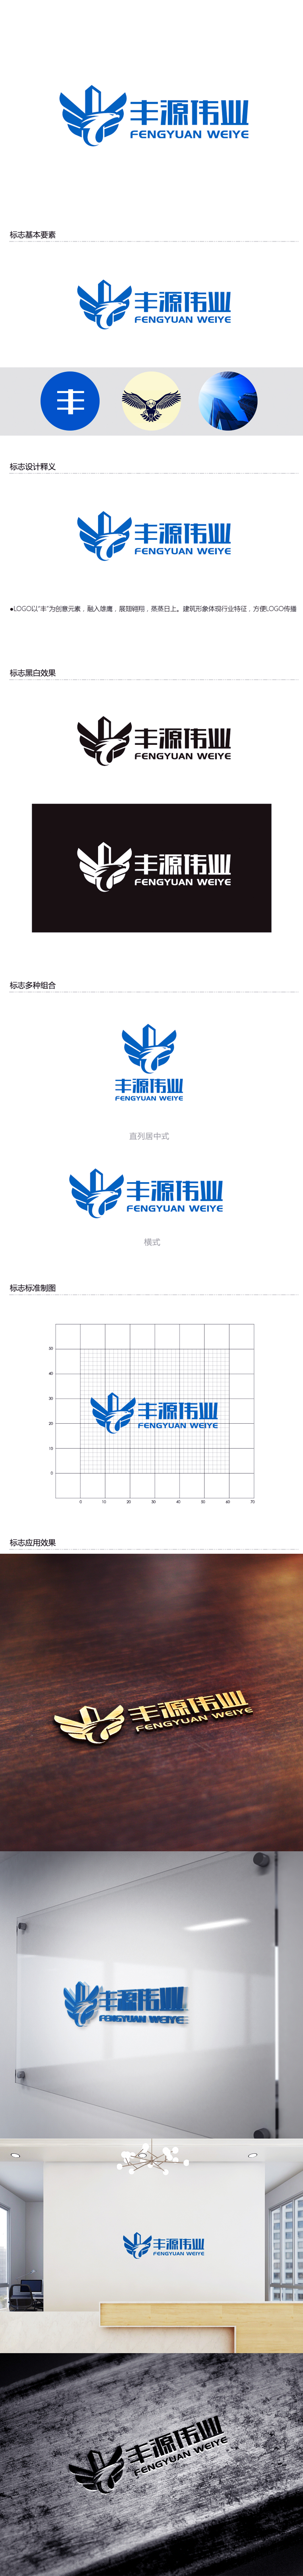 黄安悦的北京丰源伟业建筑装饰工程有限公司logo设计